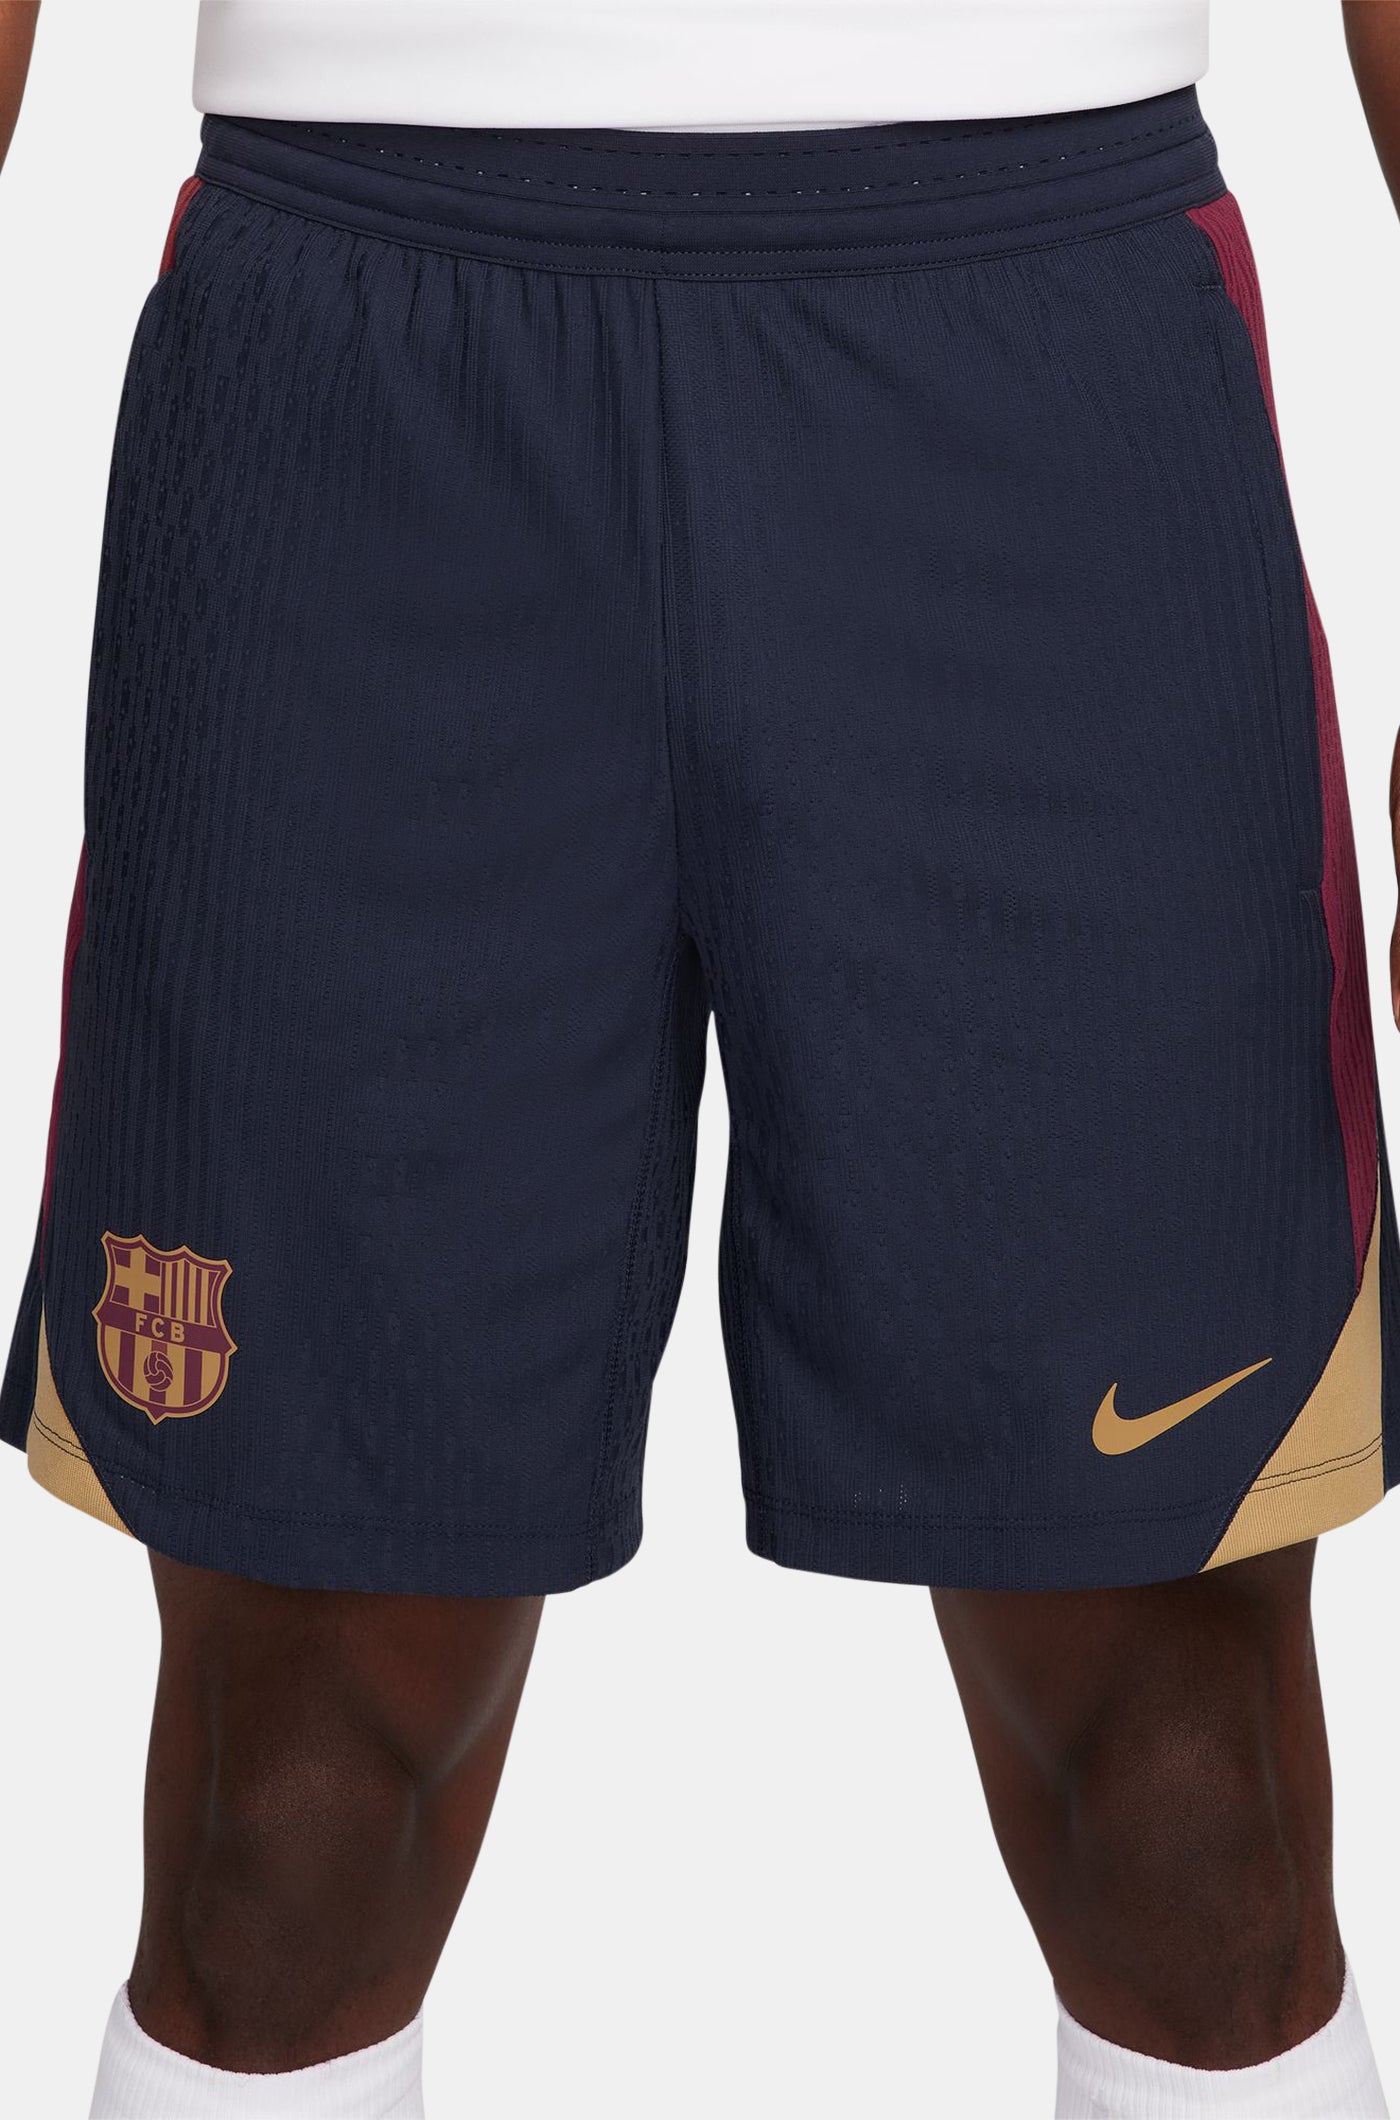 Pantalons curts d'entrenament obsidiana FC Barcelona 23/24 - Edició Jugador